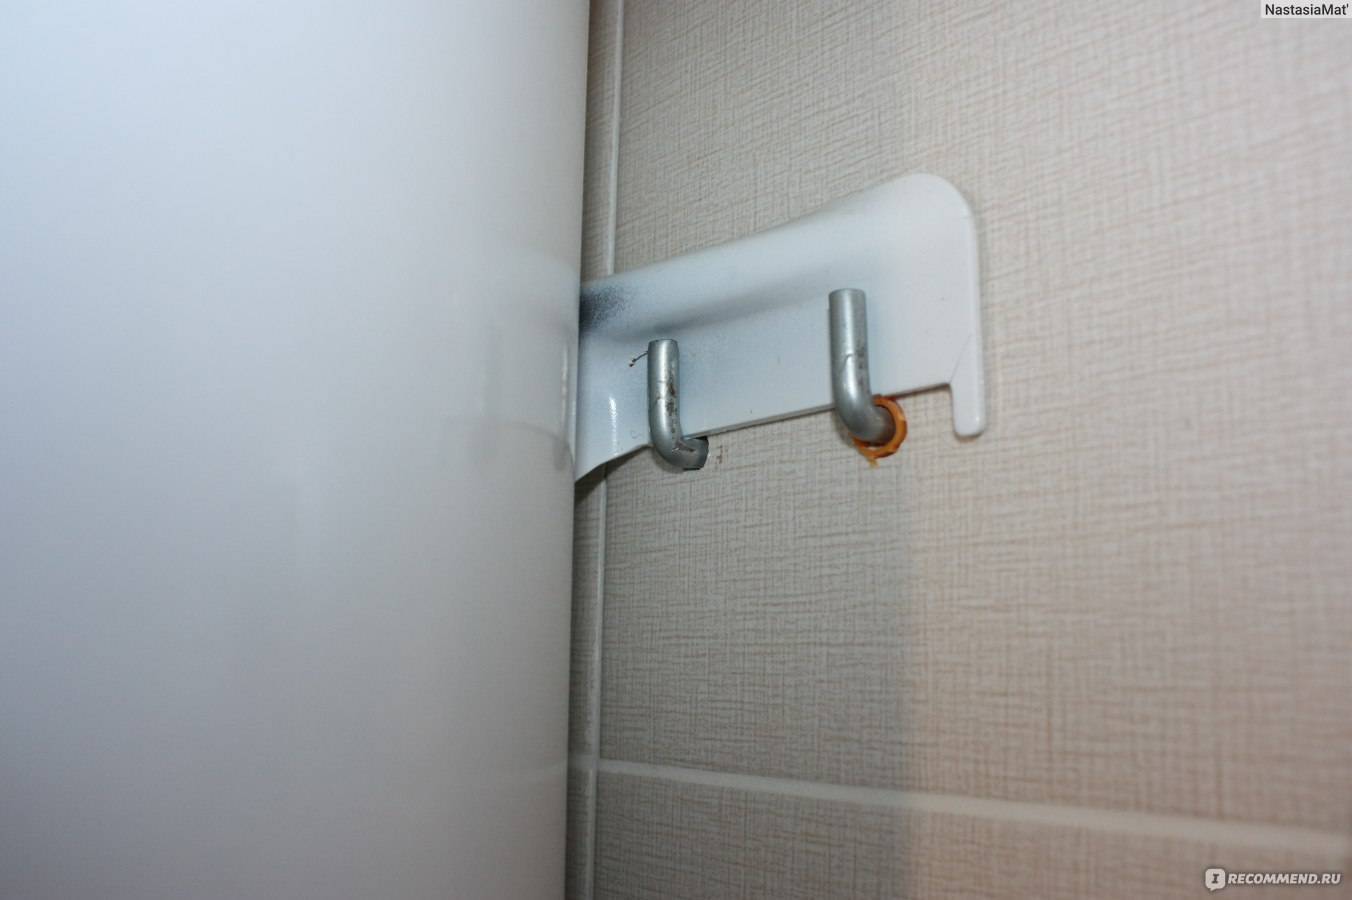 Как повесить и закрепить водонагреватель на стенах разного типа: деревянной, из пеноблоков, гипсокартон и другие